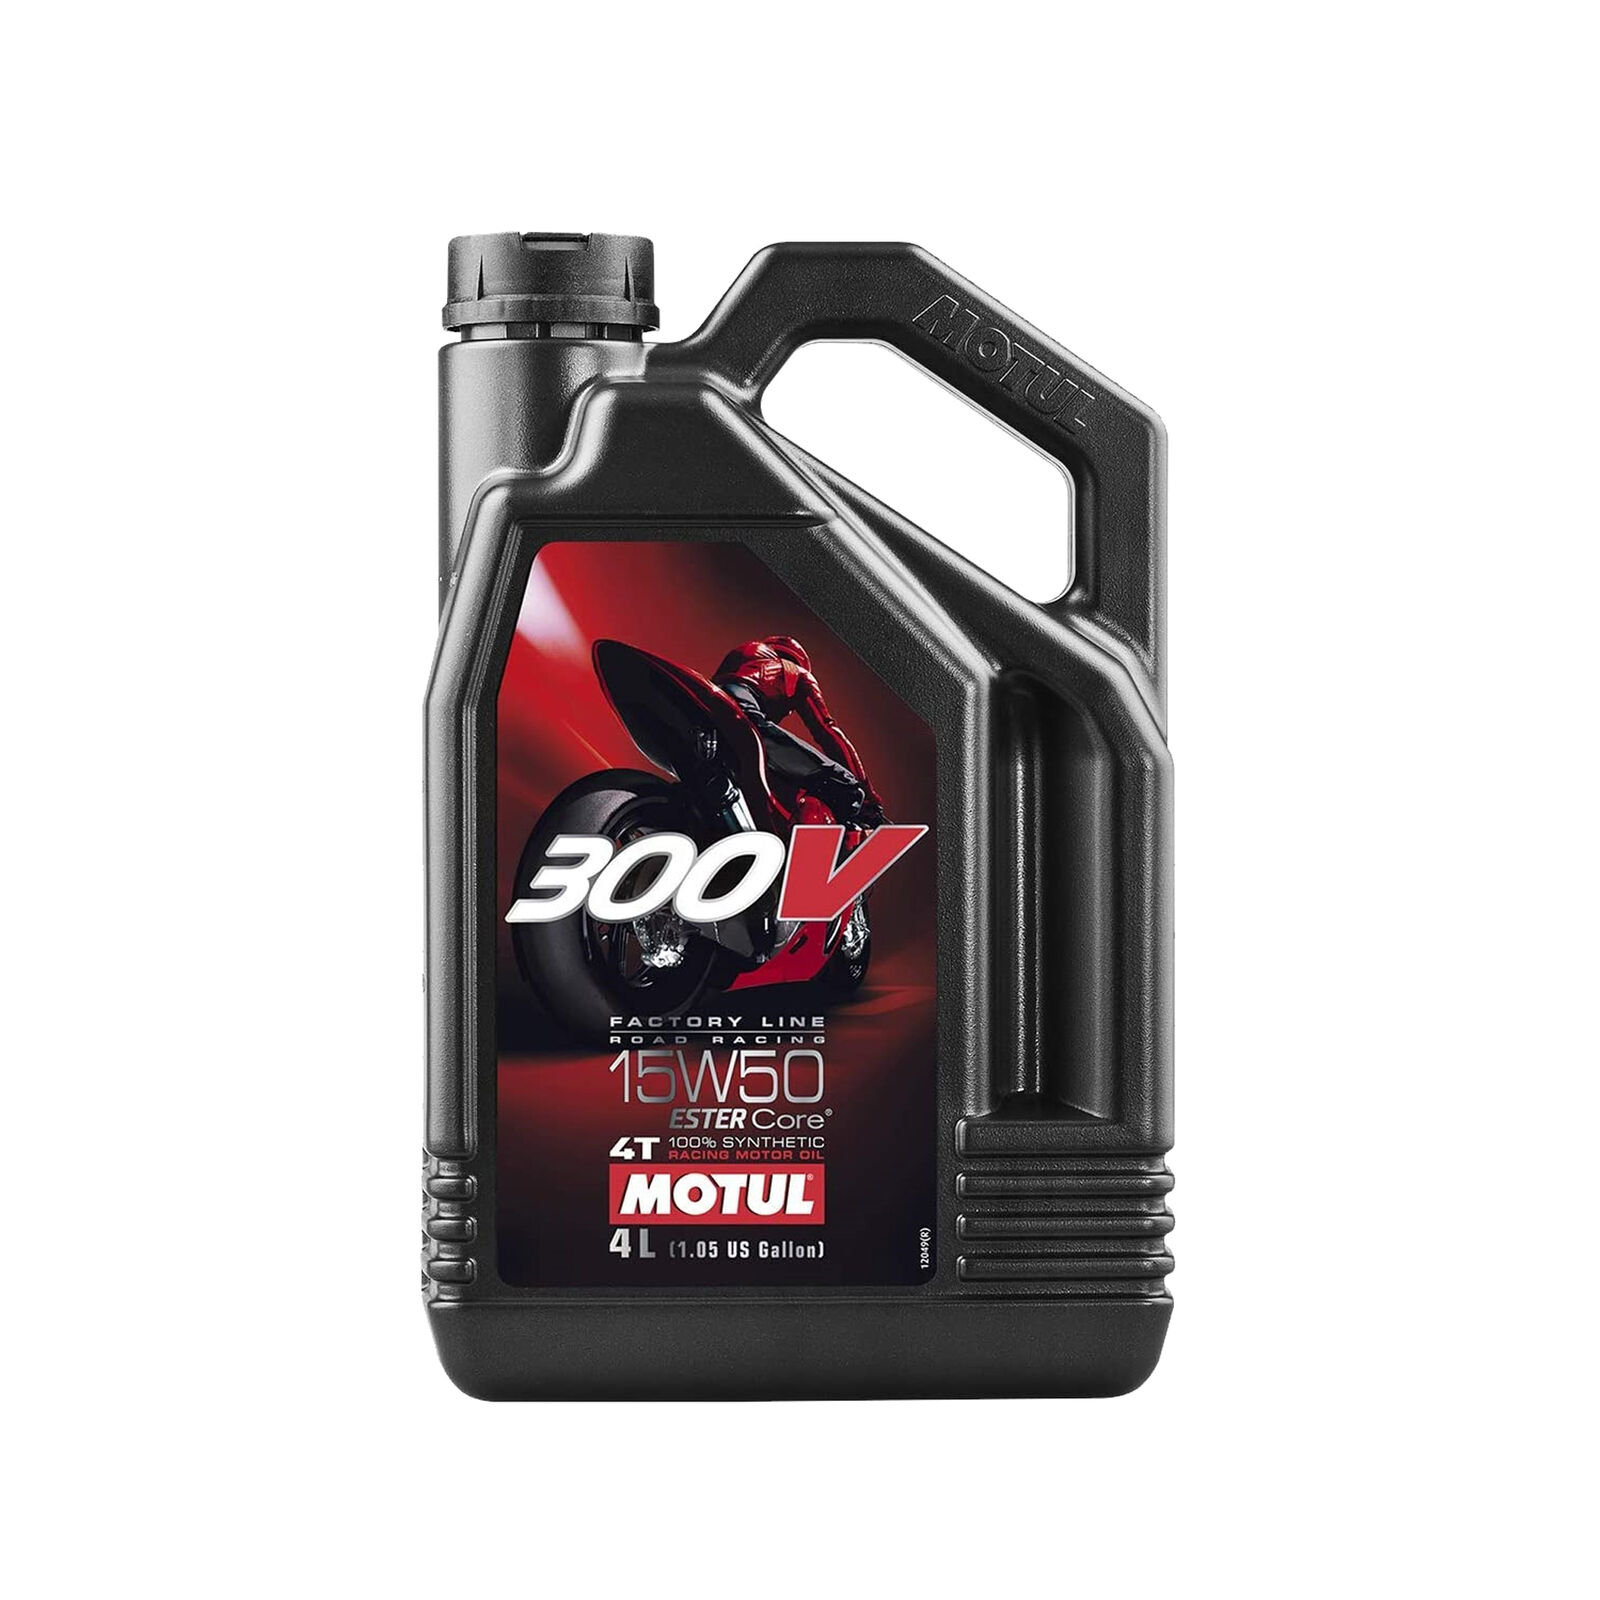 Motul 300V 4T Full Synthetic Motorcycle Oil 15W-50 4 Liter 1.05 Gallon 104129